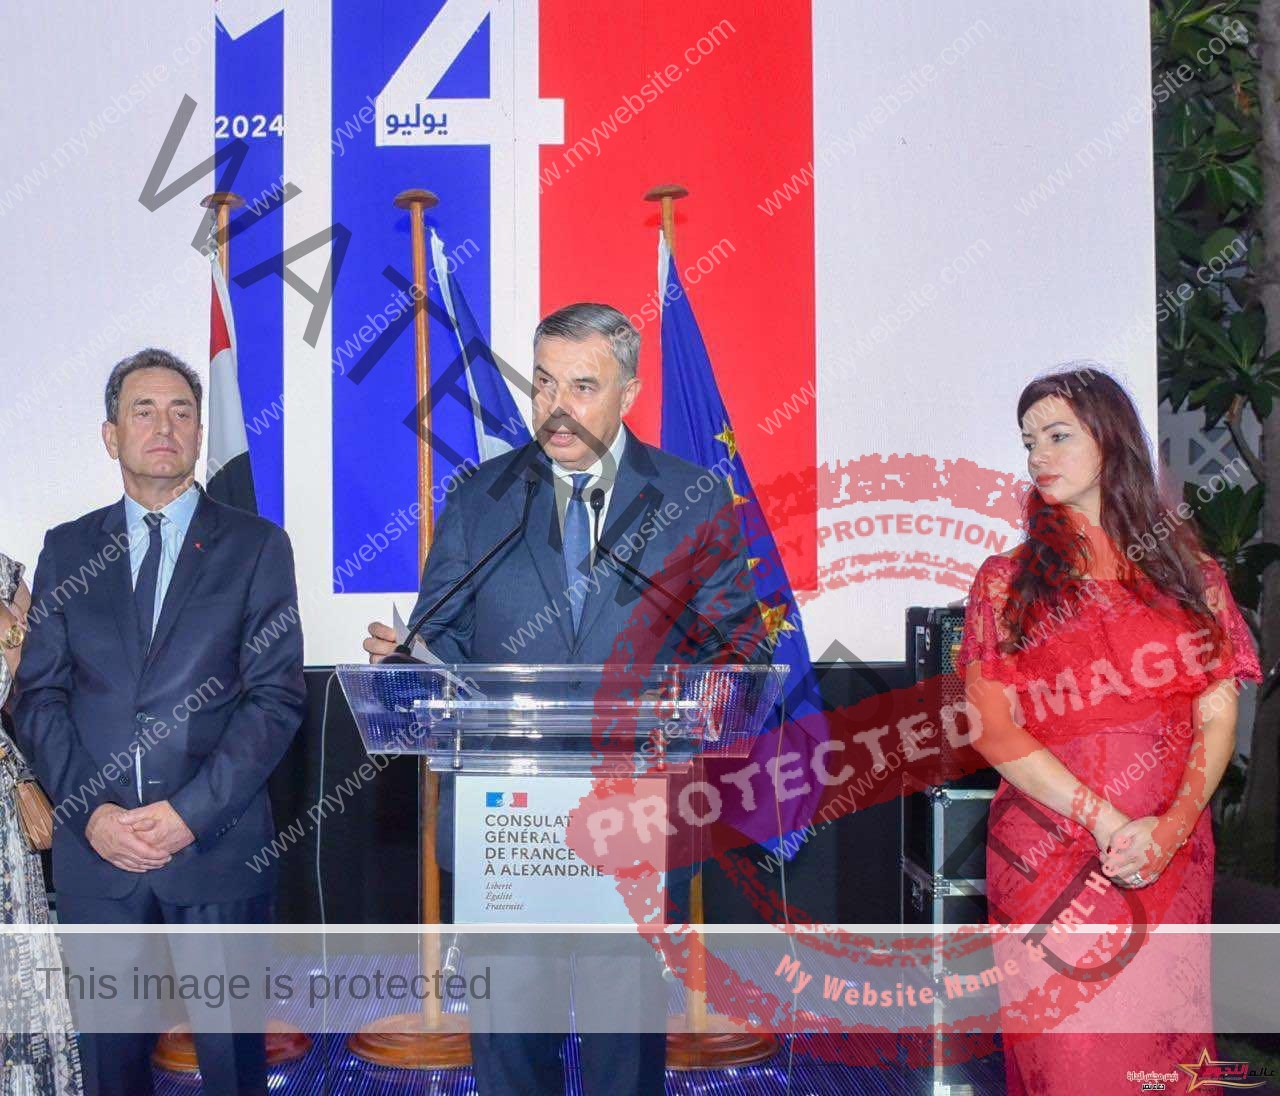 الفريق أحمد خالد حسن سعيد يحضر حفل استقبال القنصلية العامة لفرنسا بمناسبة عيد فرنسا القومي